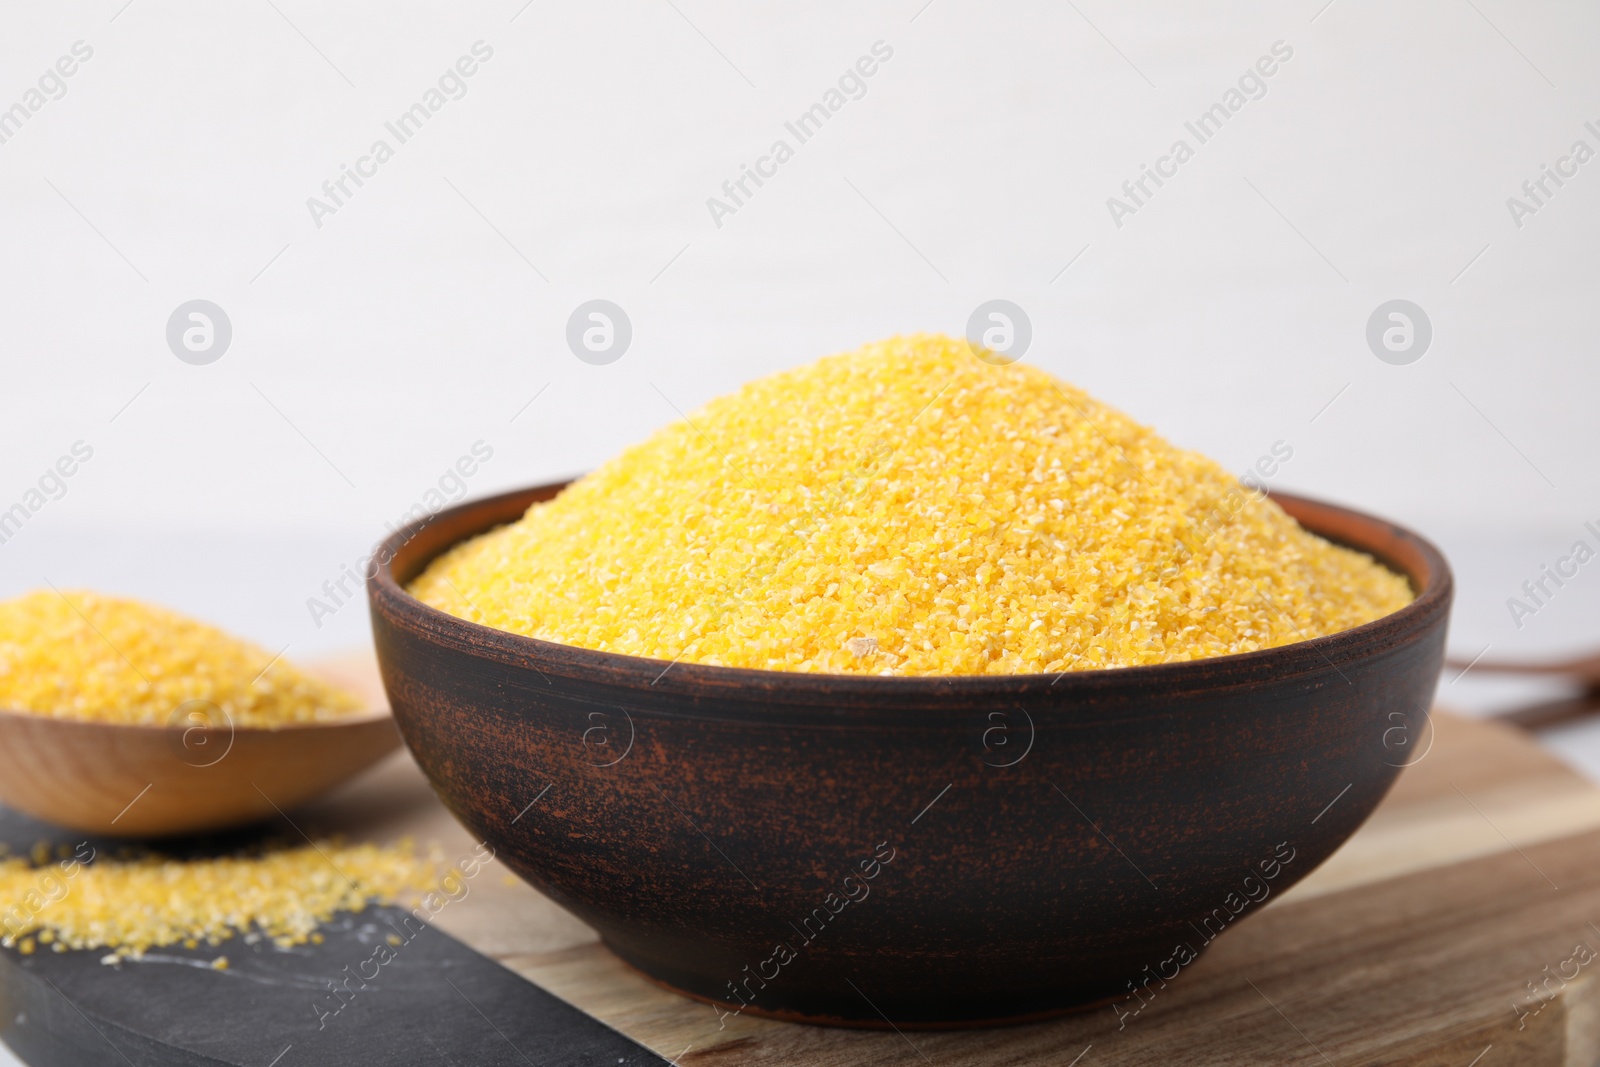 Photo of Raw cornmeal in bowl on table, closeup